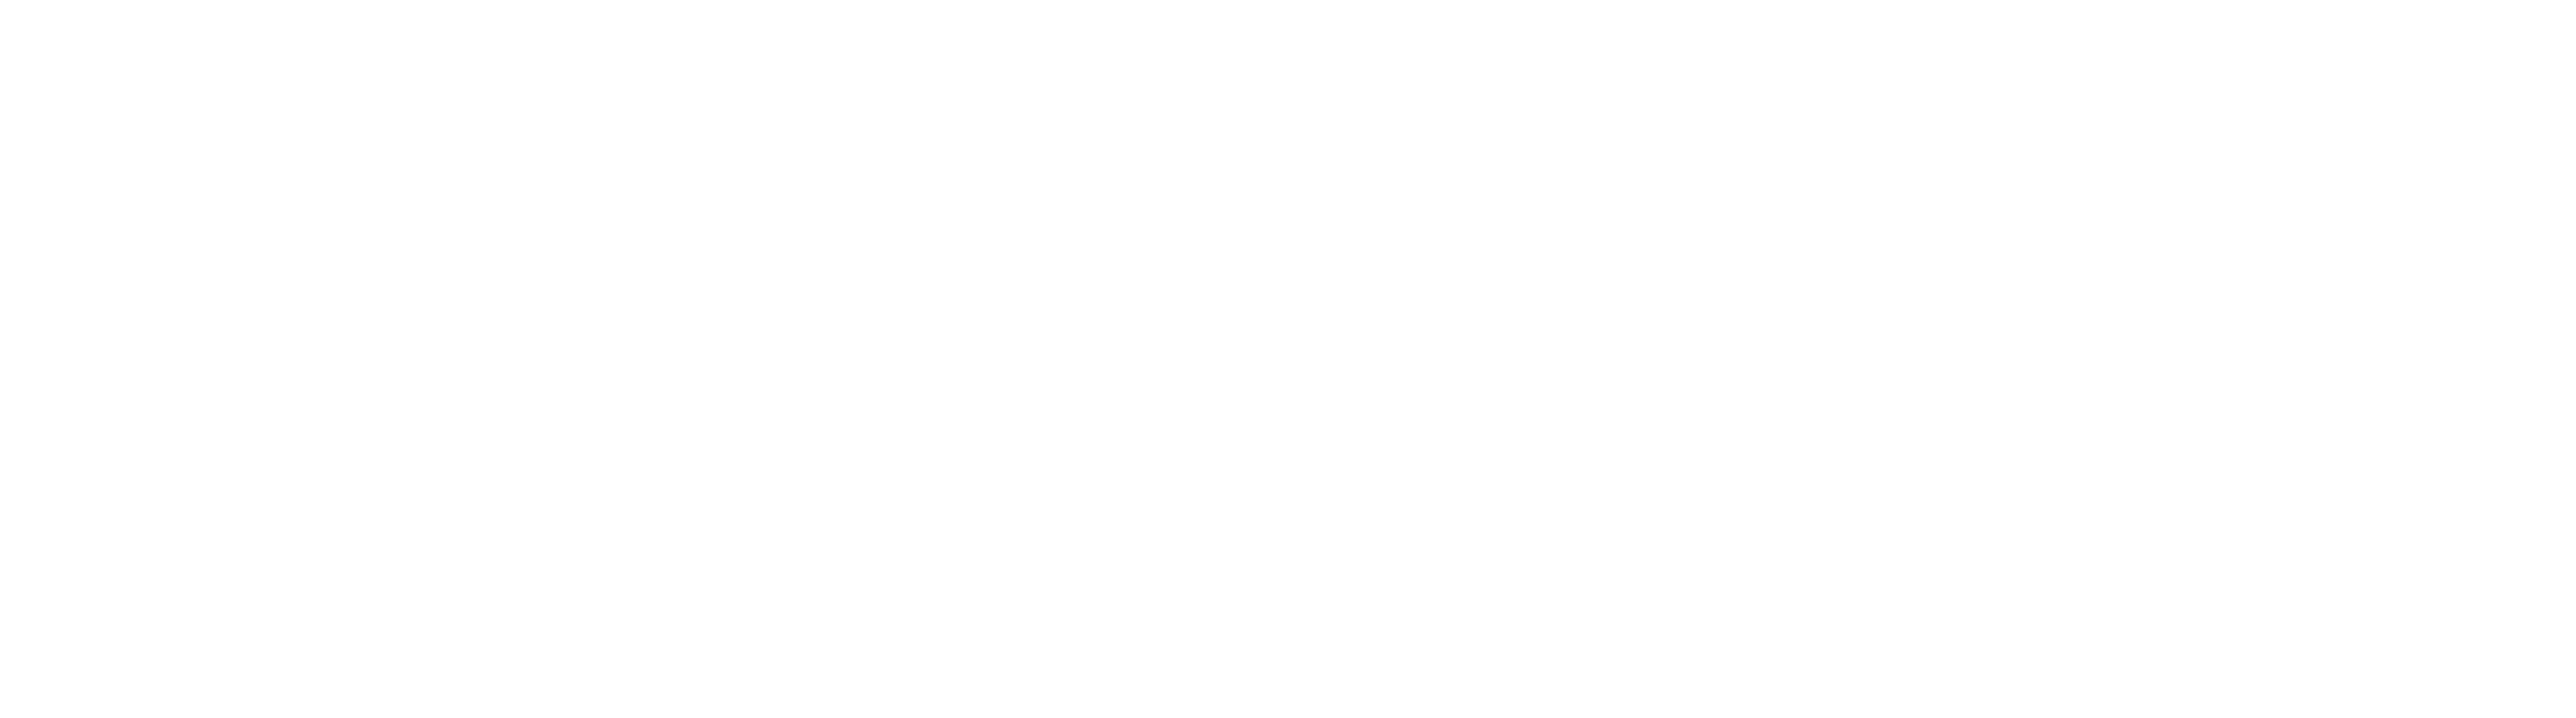 Archer Marine Services